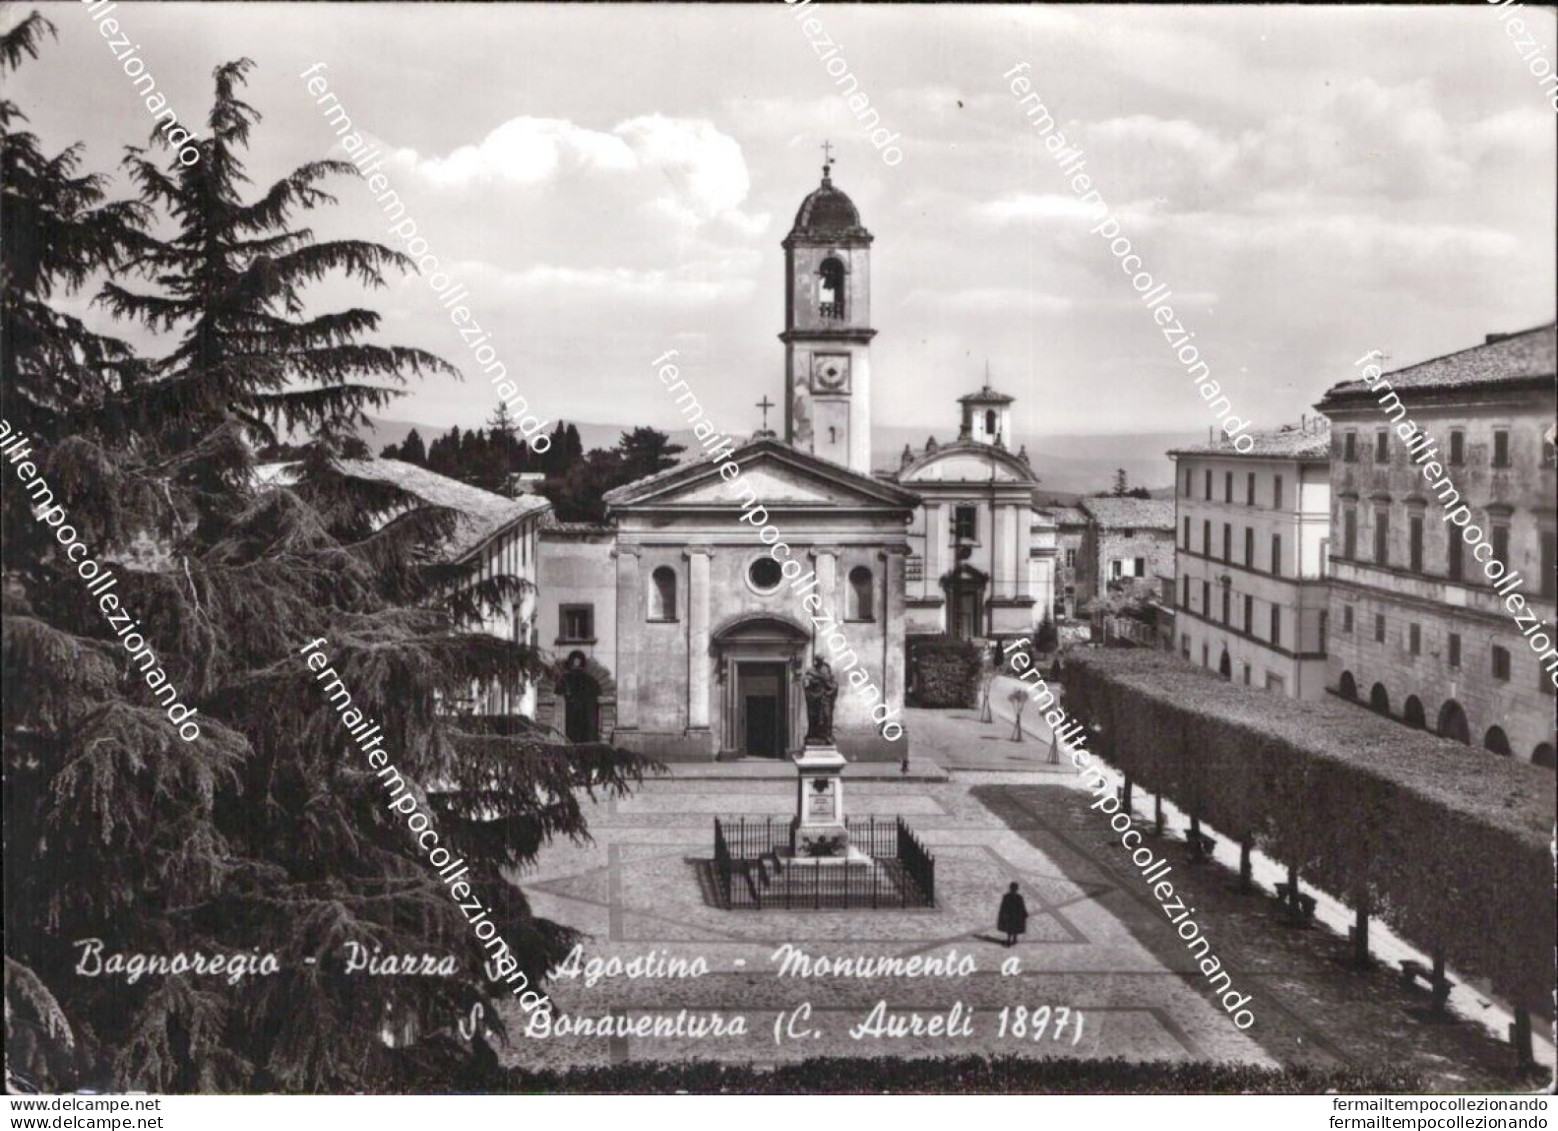 Bs755 Cartolina Bagnoregio Piazza S.agostino Monumento A S.bonaventura Viterbo - Viterbo